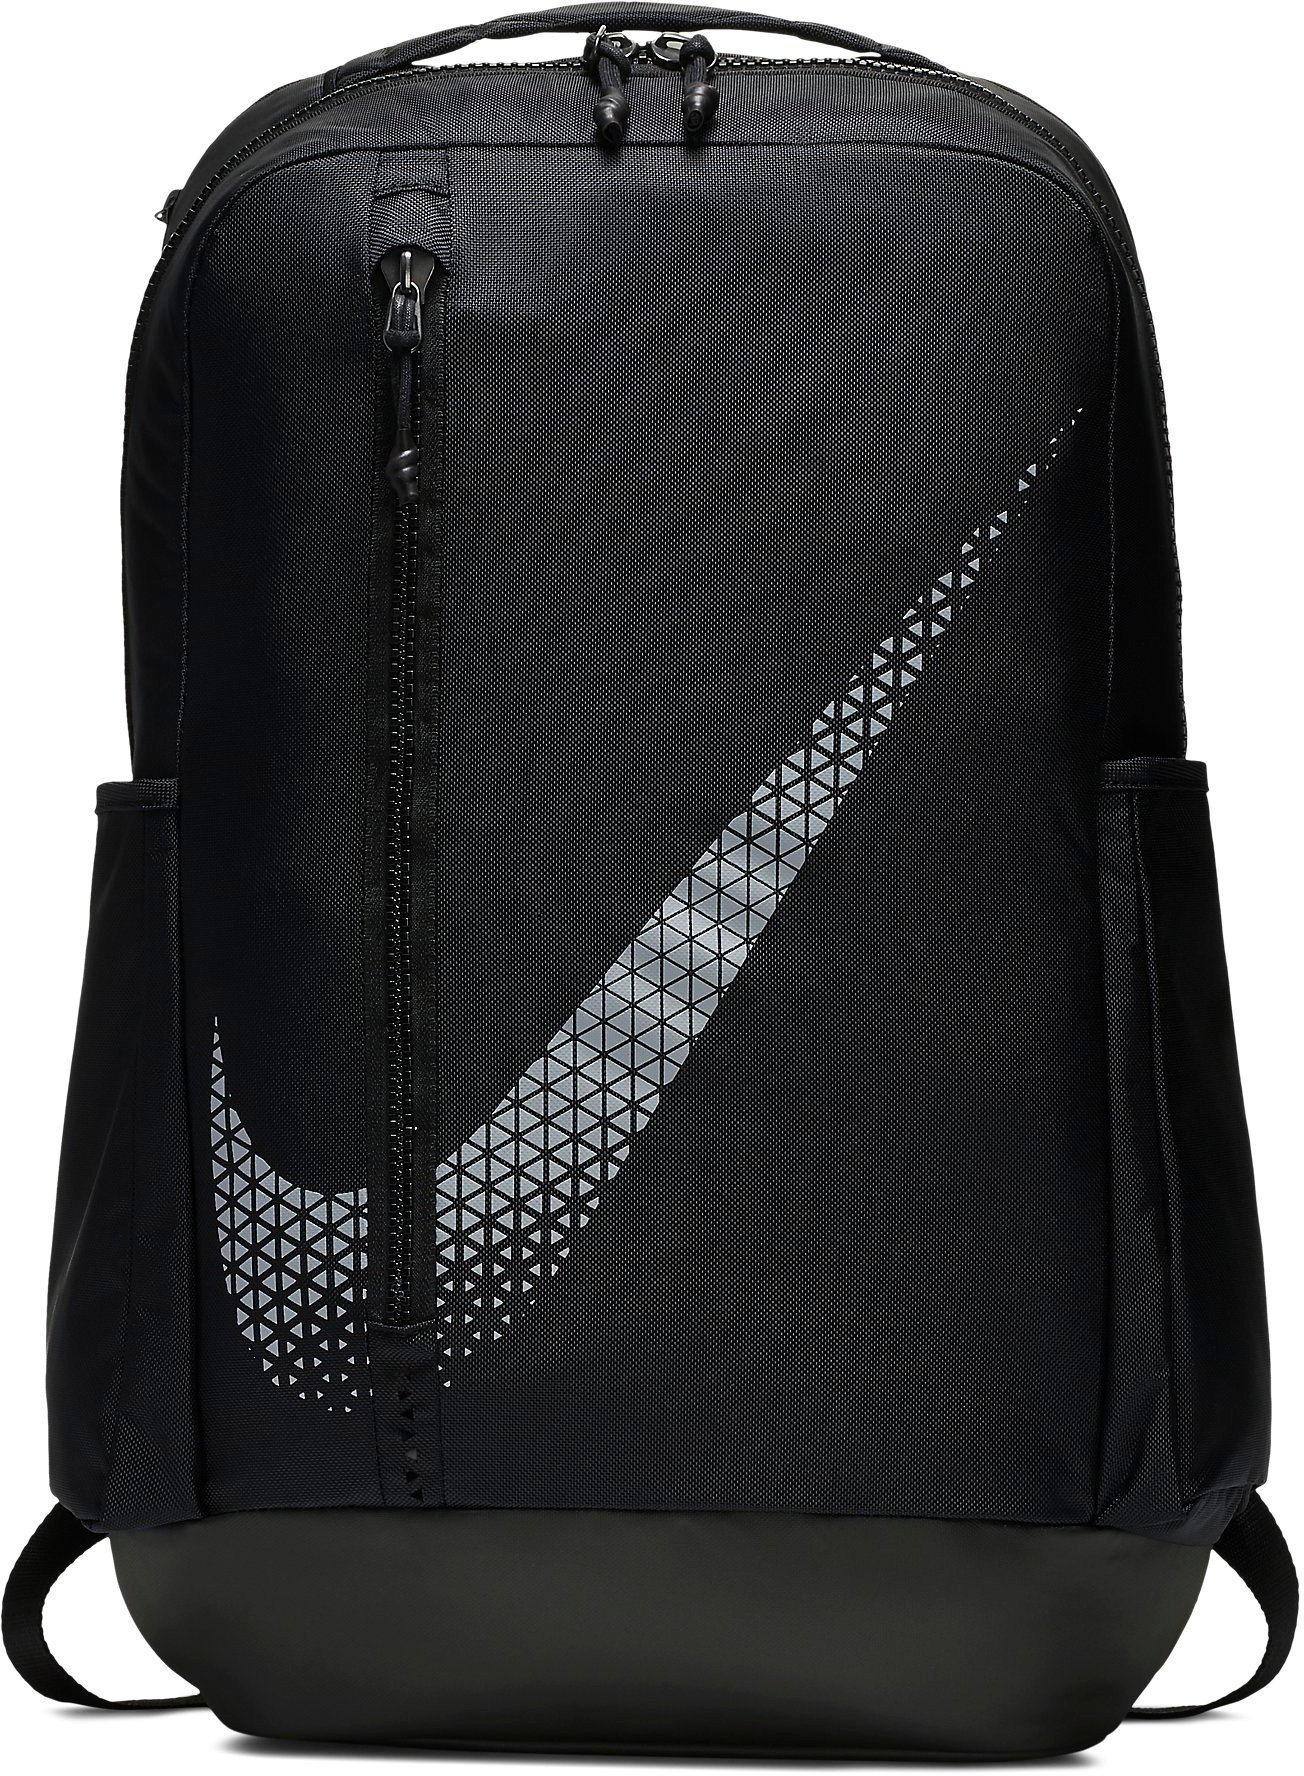 Backpack Nike NK VPR POWER BKPK - GFX - Top4Running.com